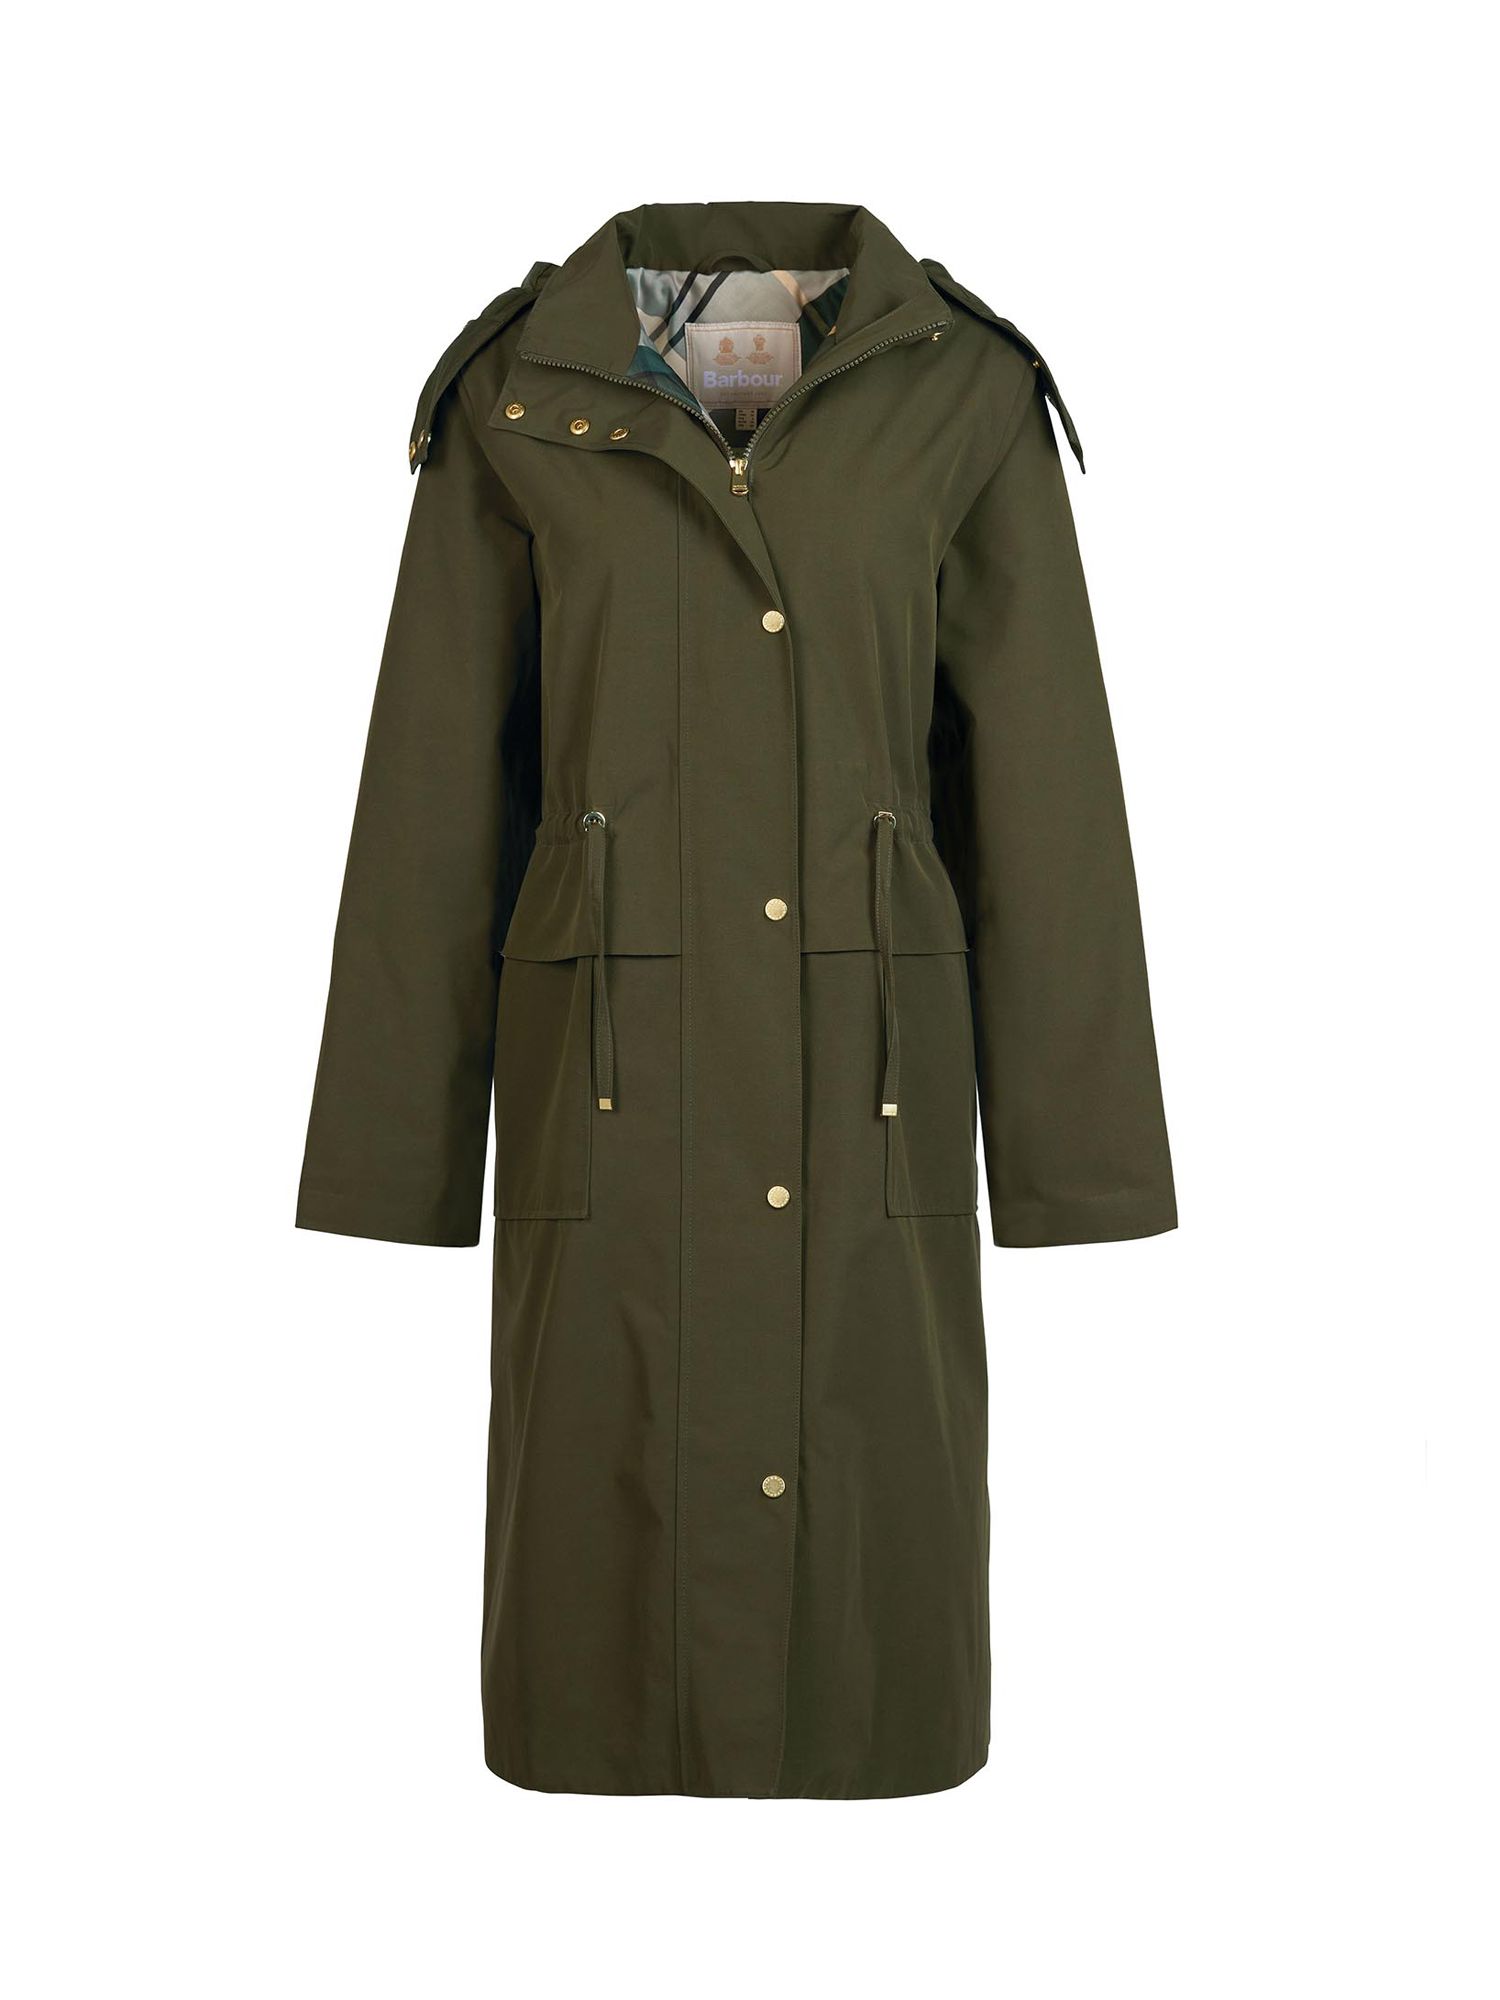 Barbour Lotte Plain Waterproof Longline Coat, Fern/Fern Tartan, 8